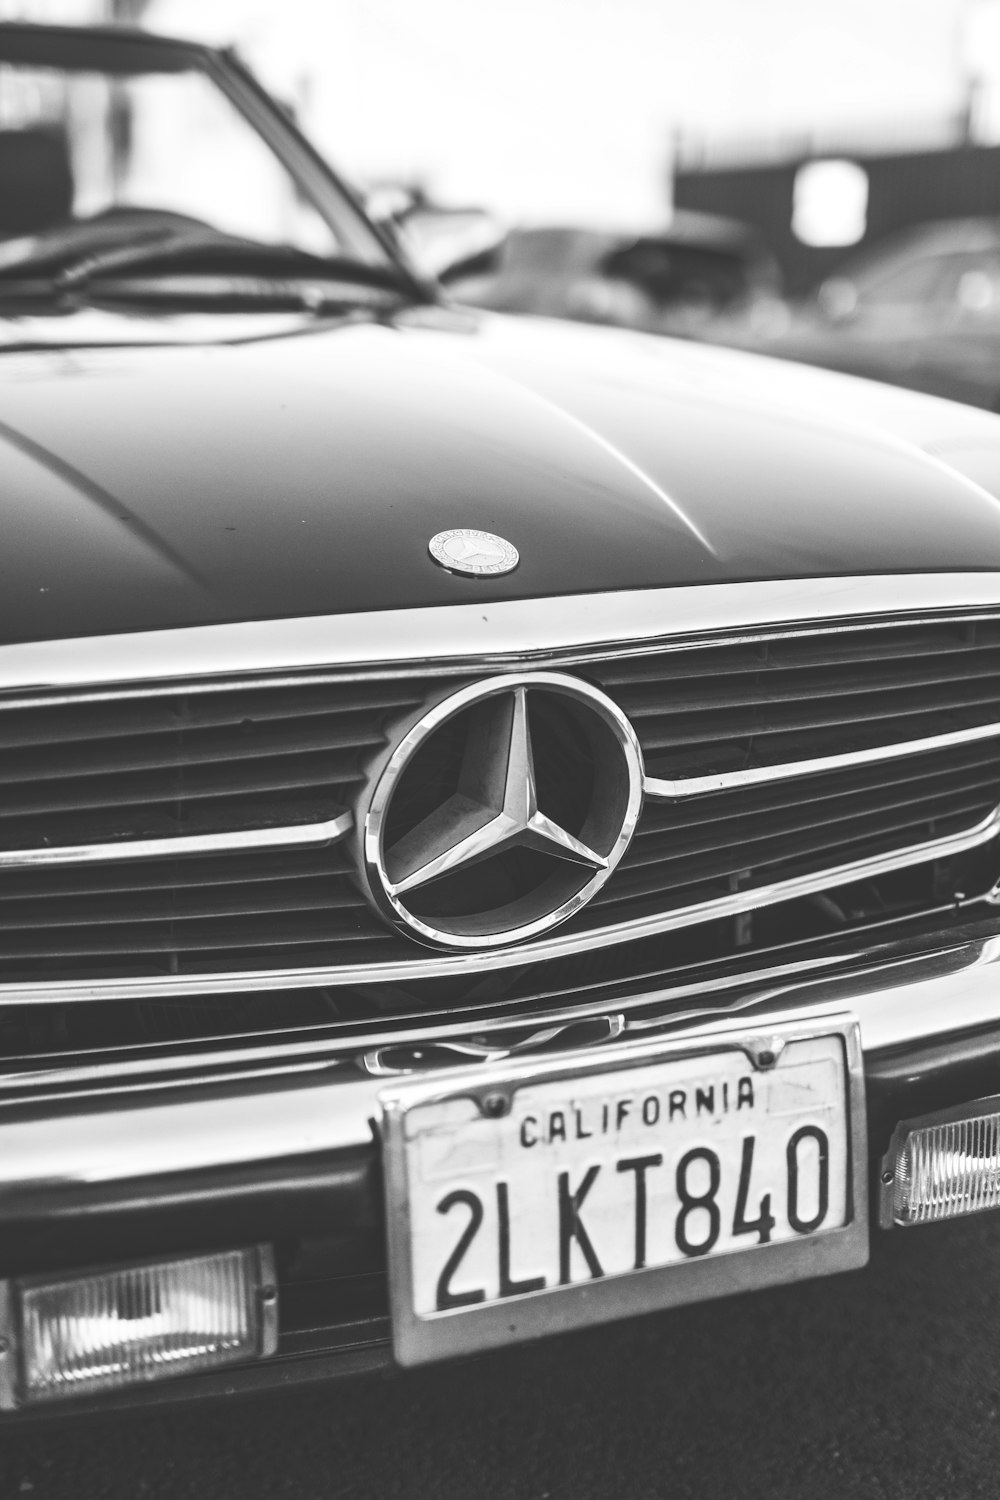 foto in scala di grigi di Mercedes-Benz